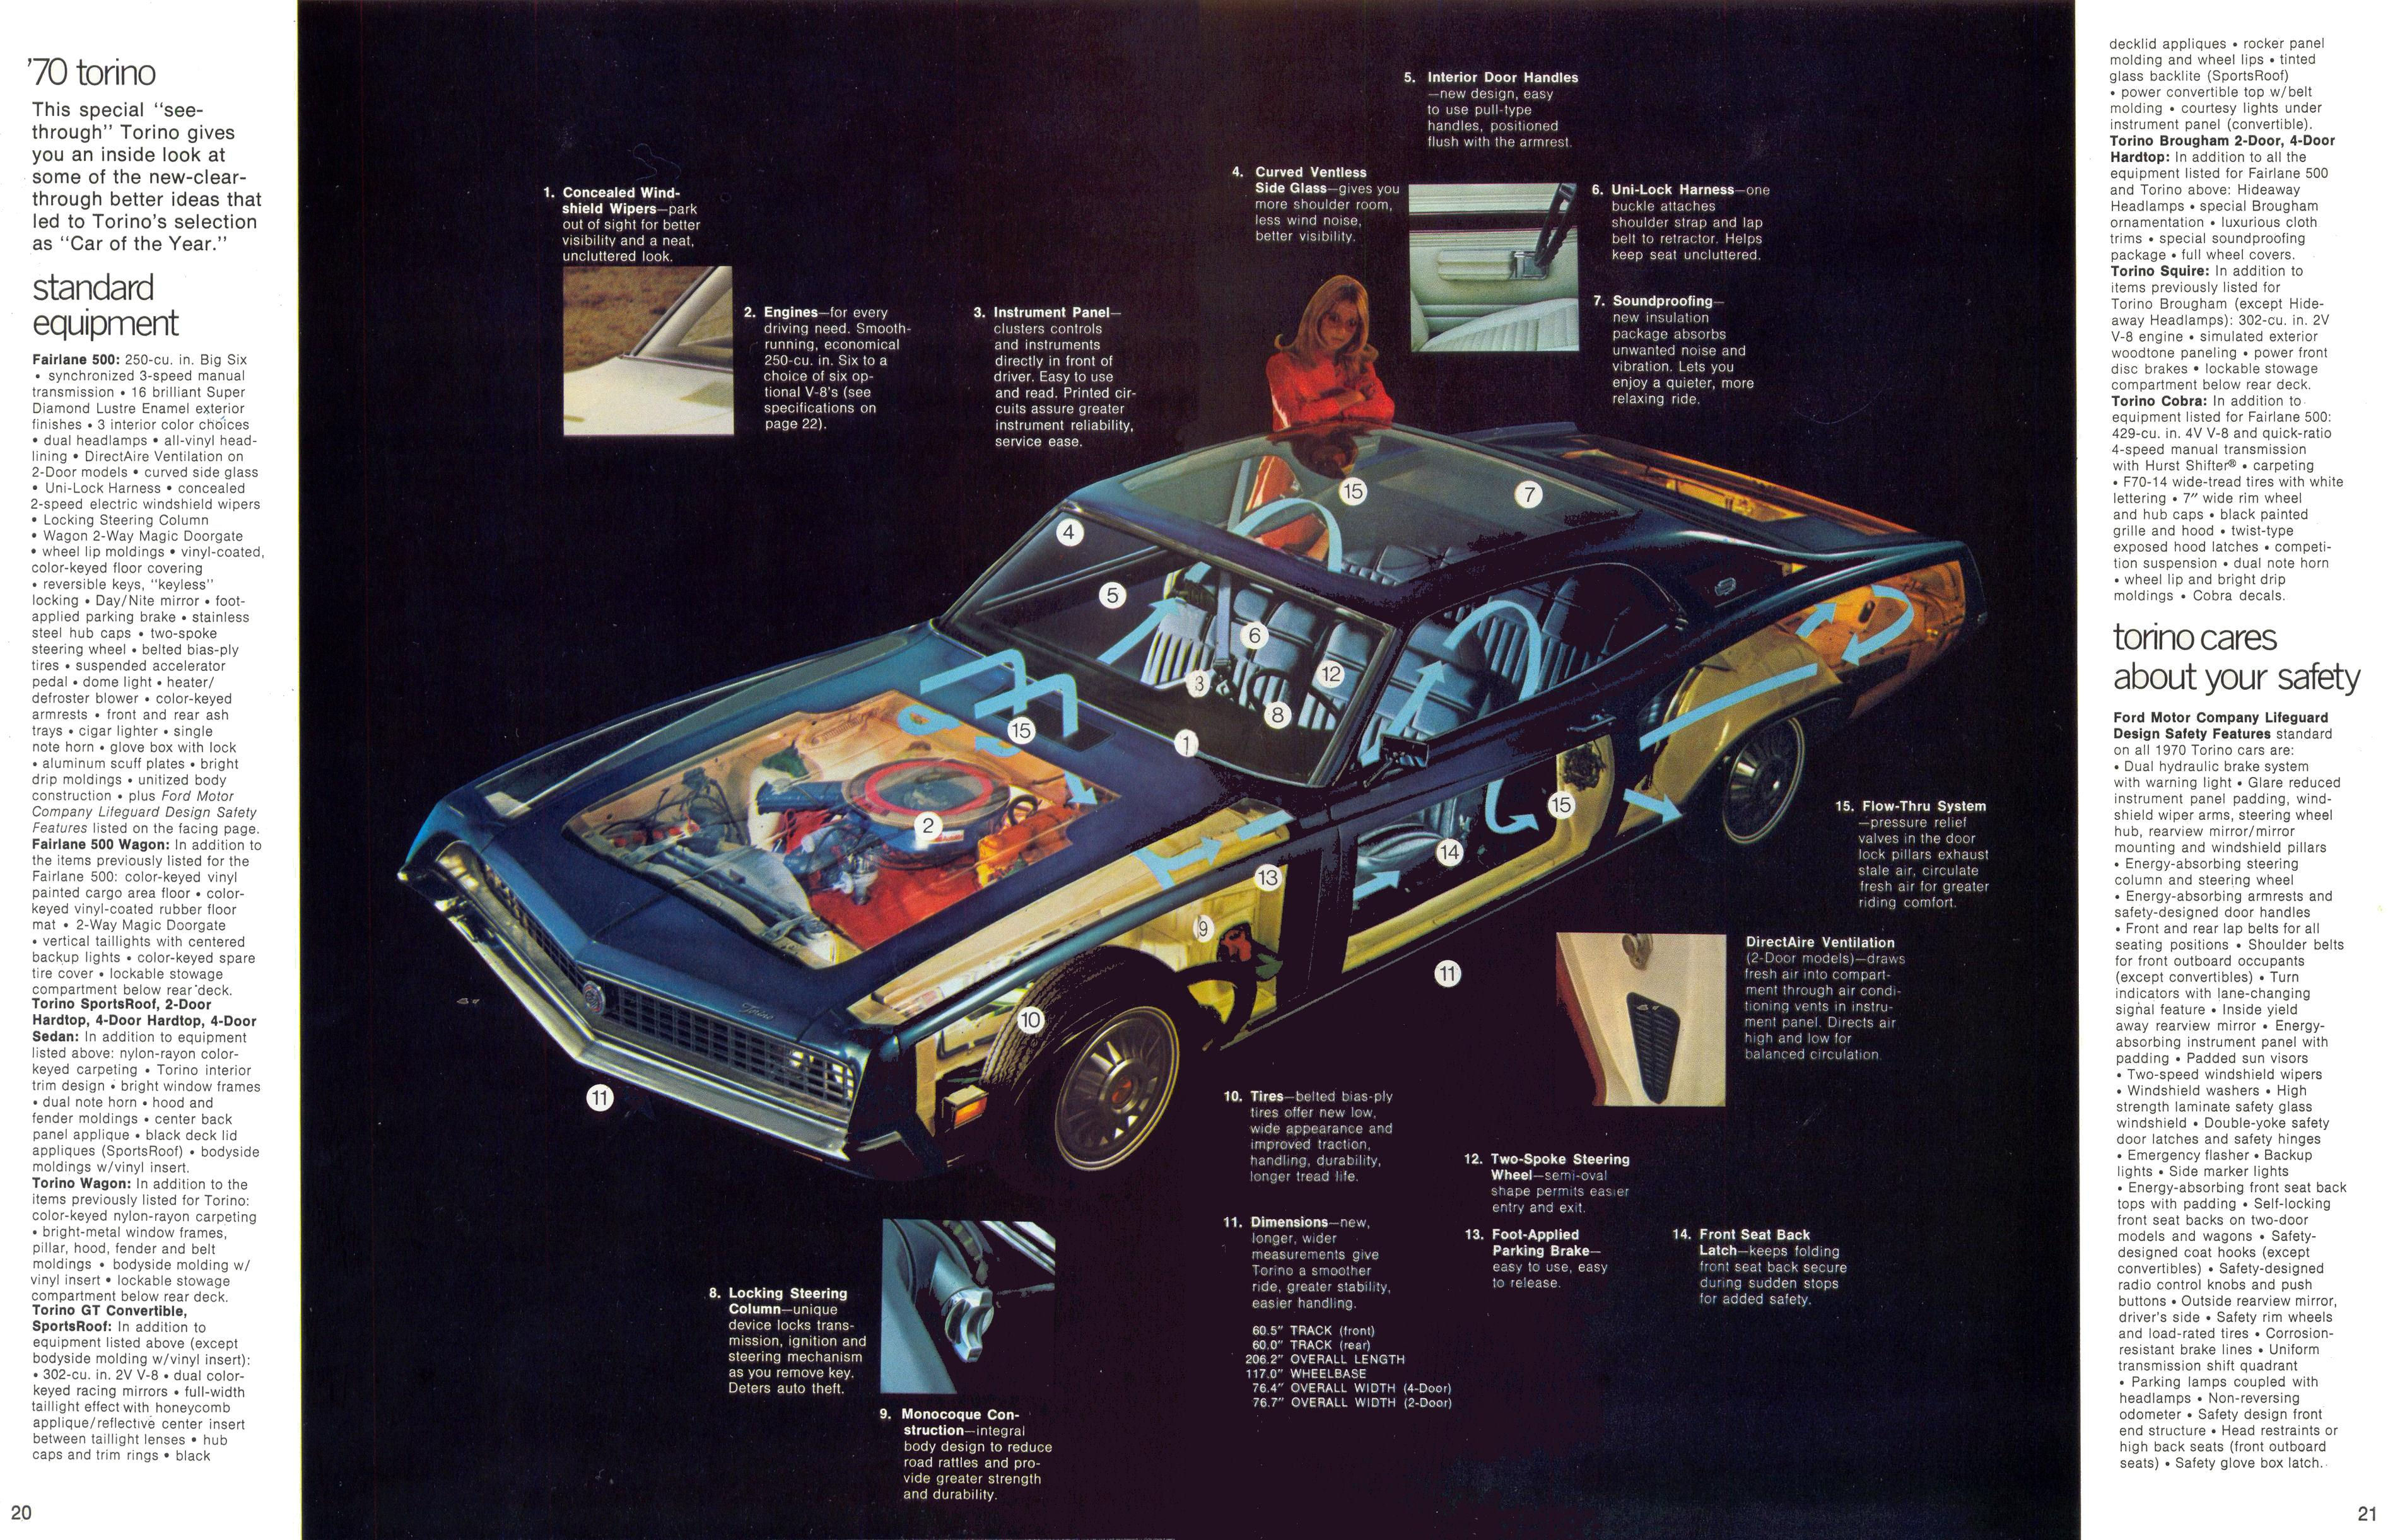 1970 フォード トリノHDデスクトップの壁紙をダウンロード